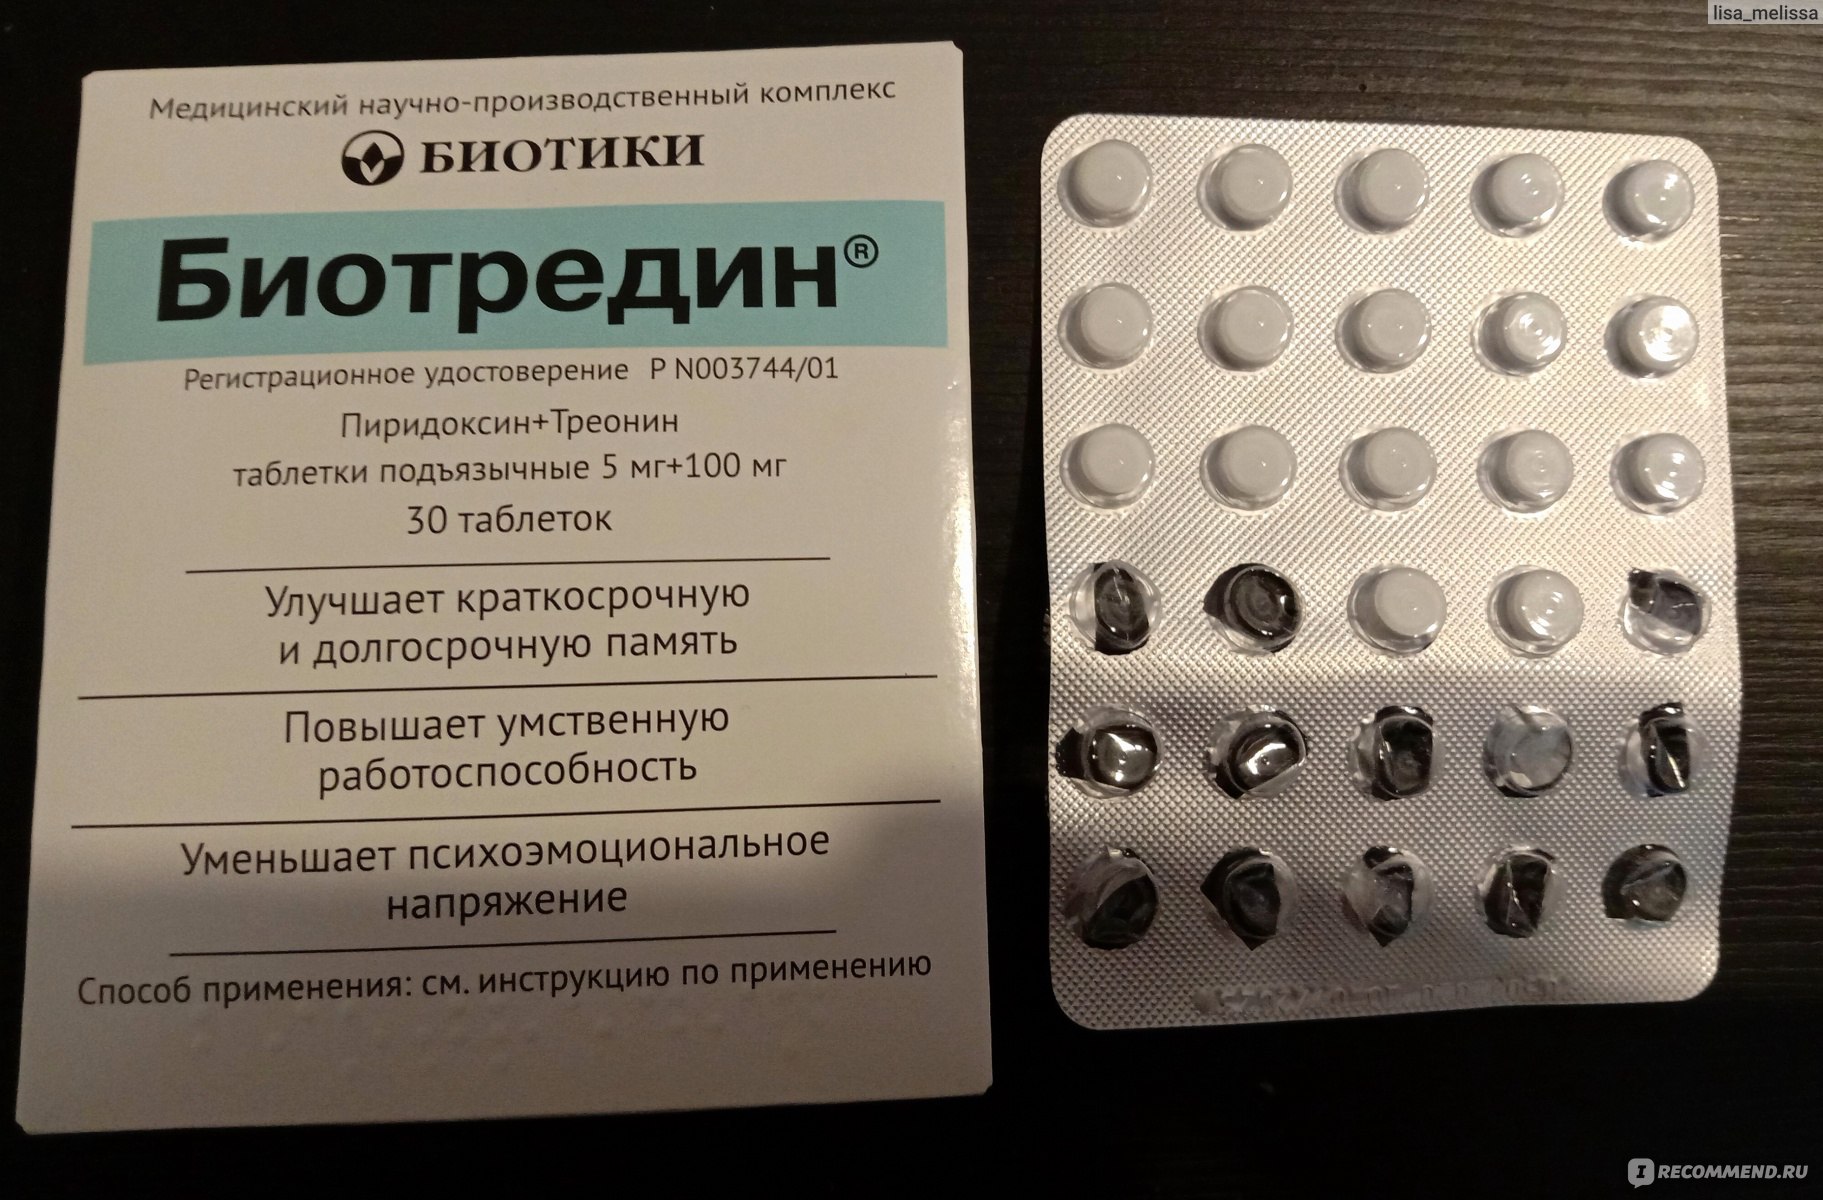 Таблетки подъязычные Биотредин - «Действенный препарат против апатии .